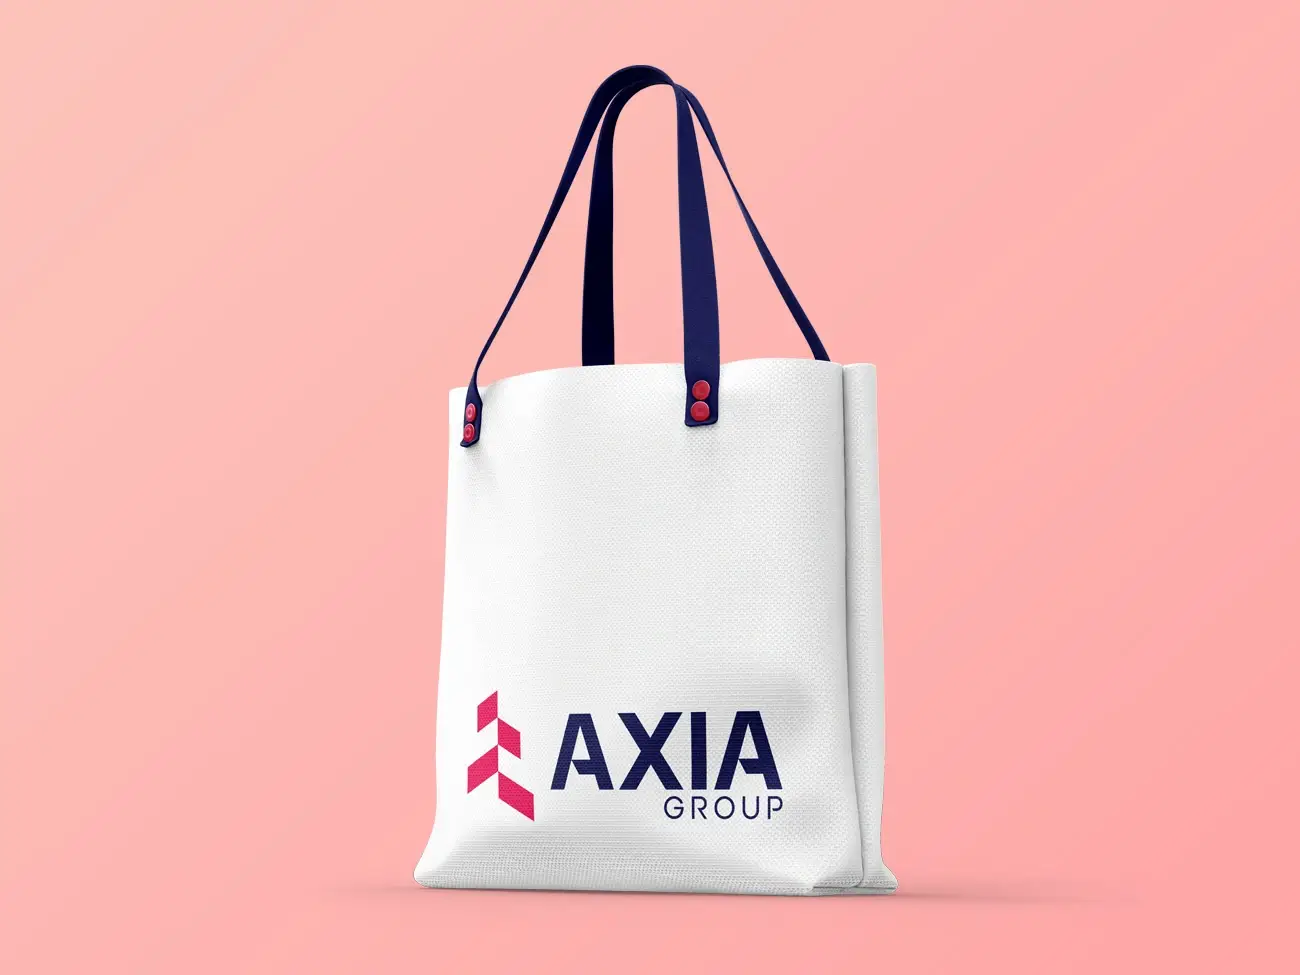 Axia Groups virksomhedslogo på pose